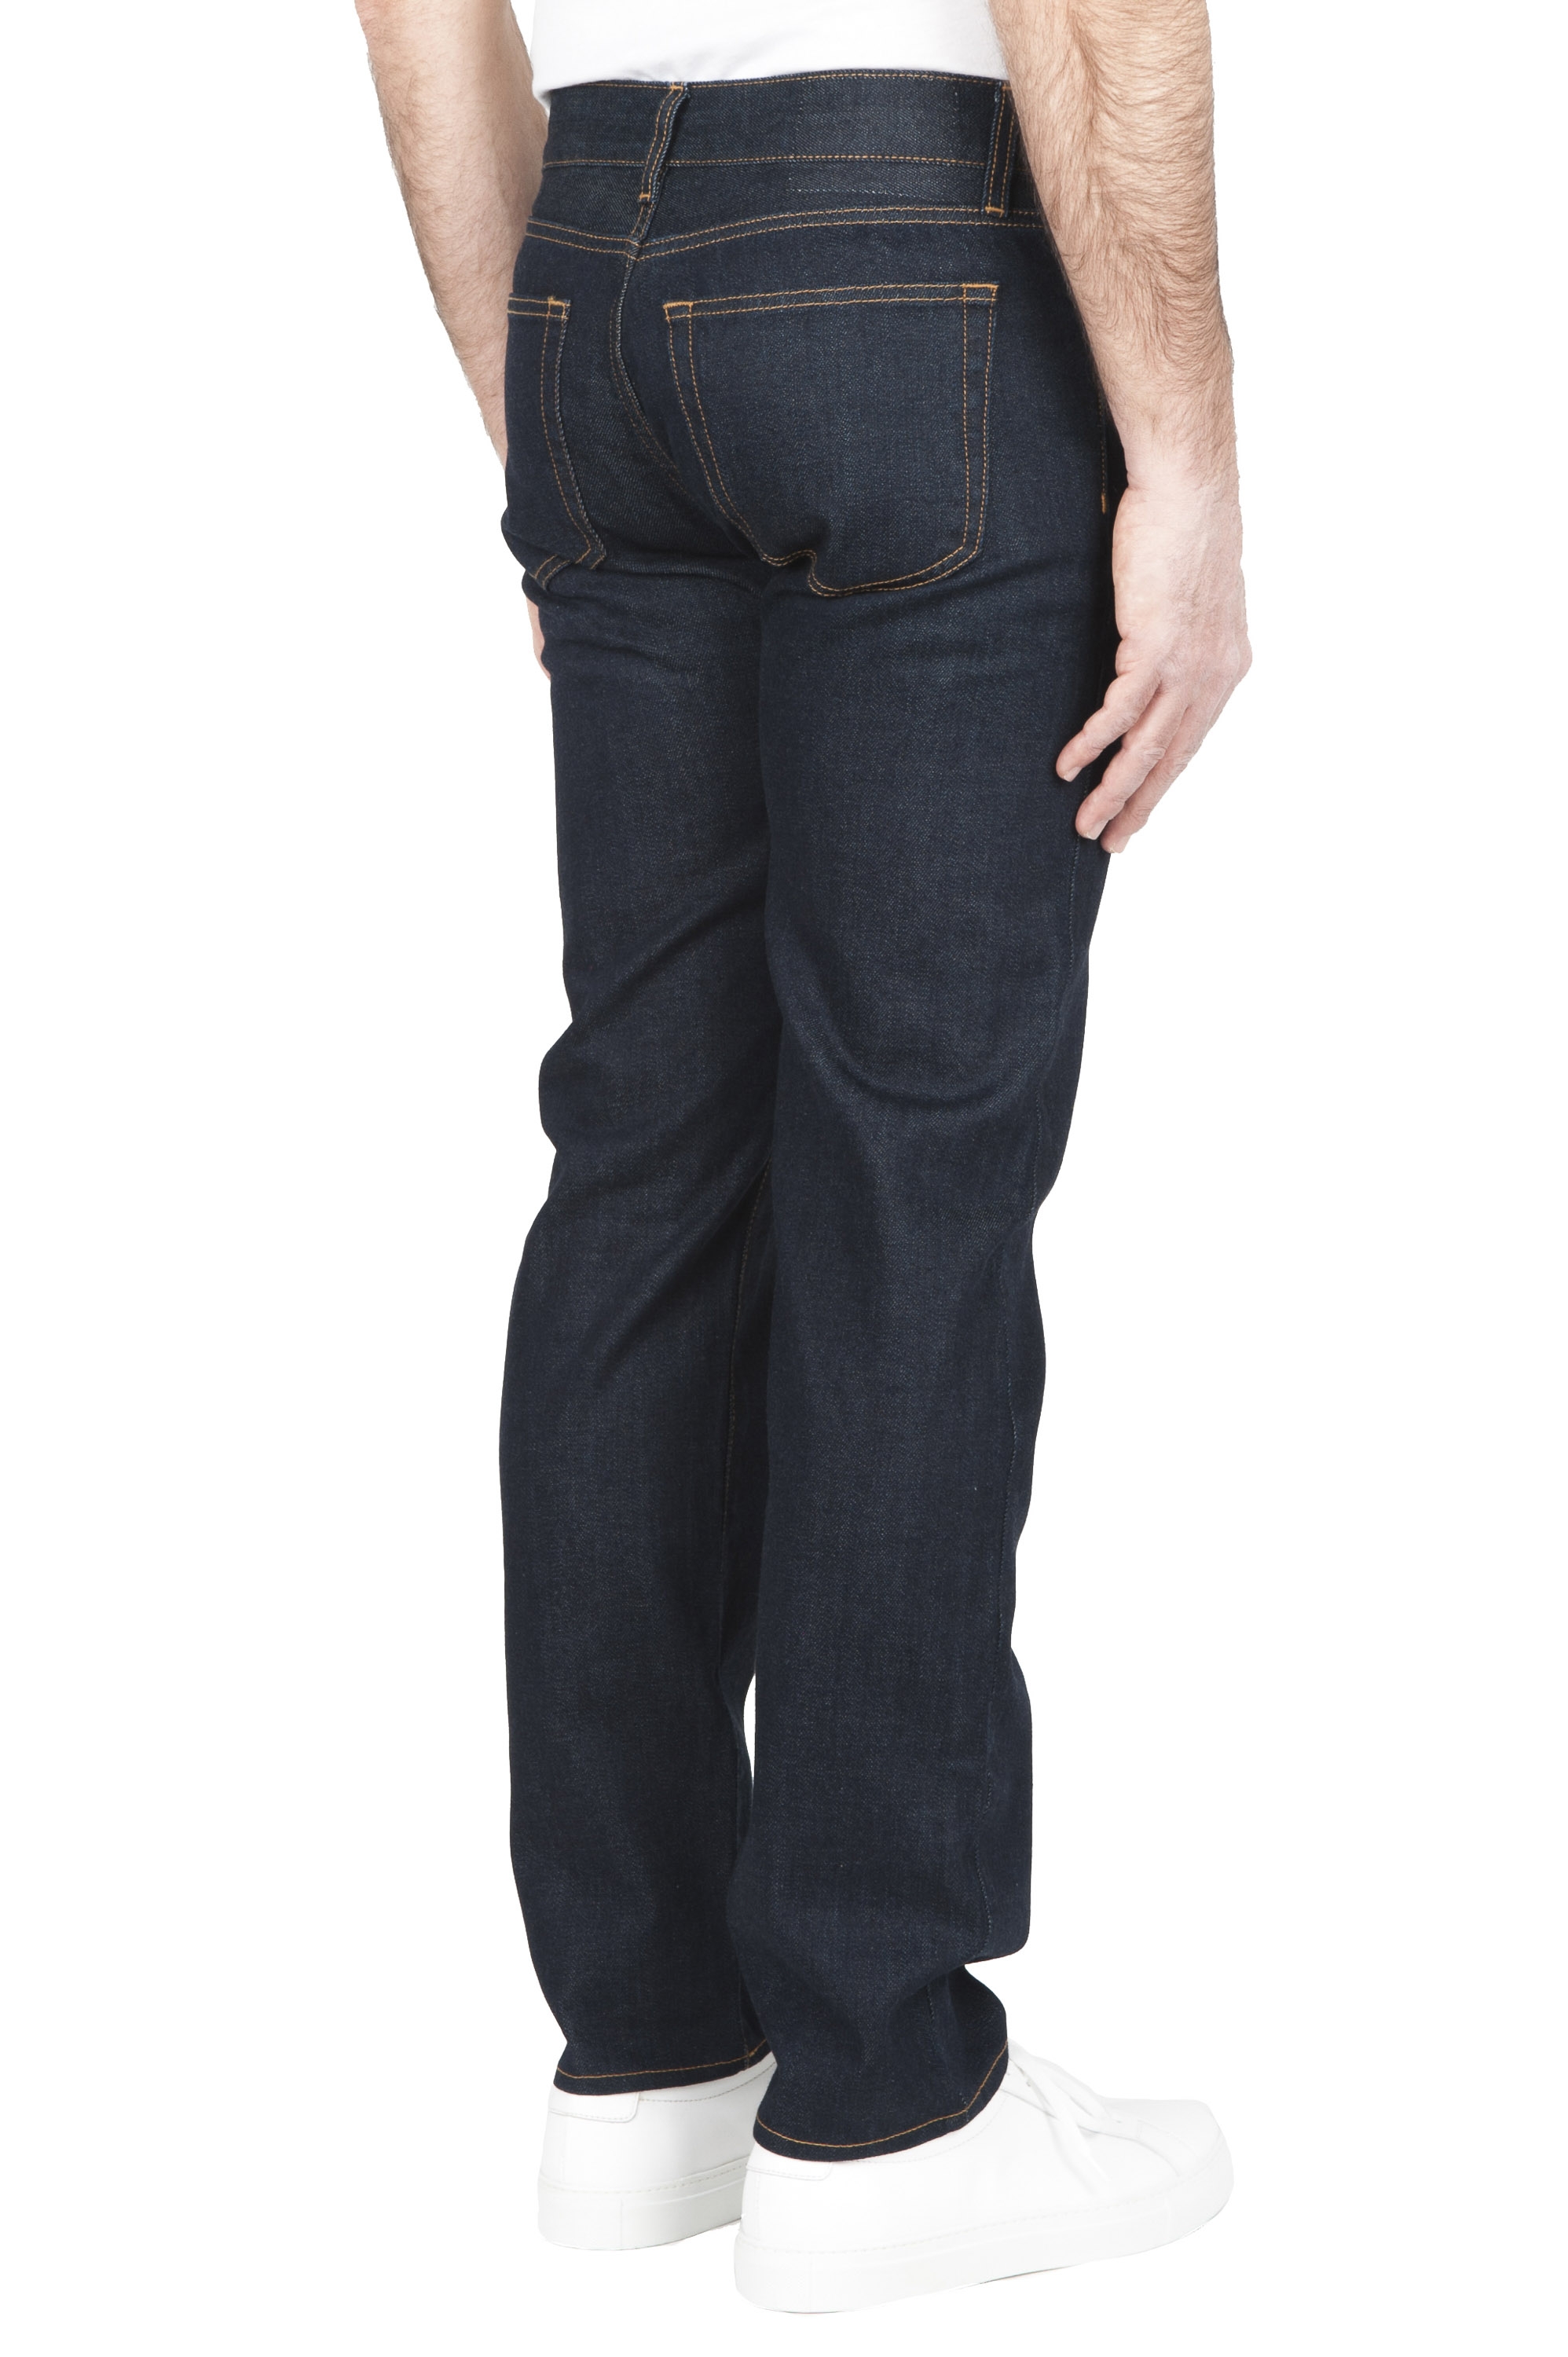 Indigo selvedge jeans